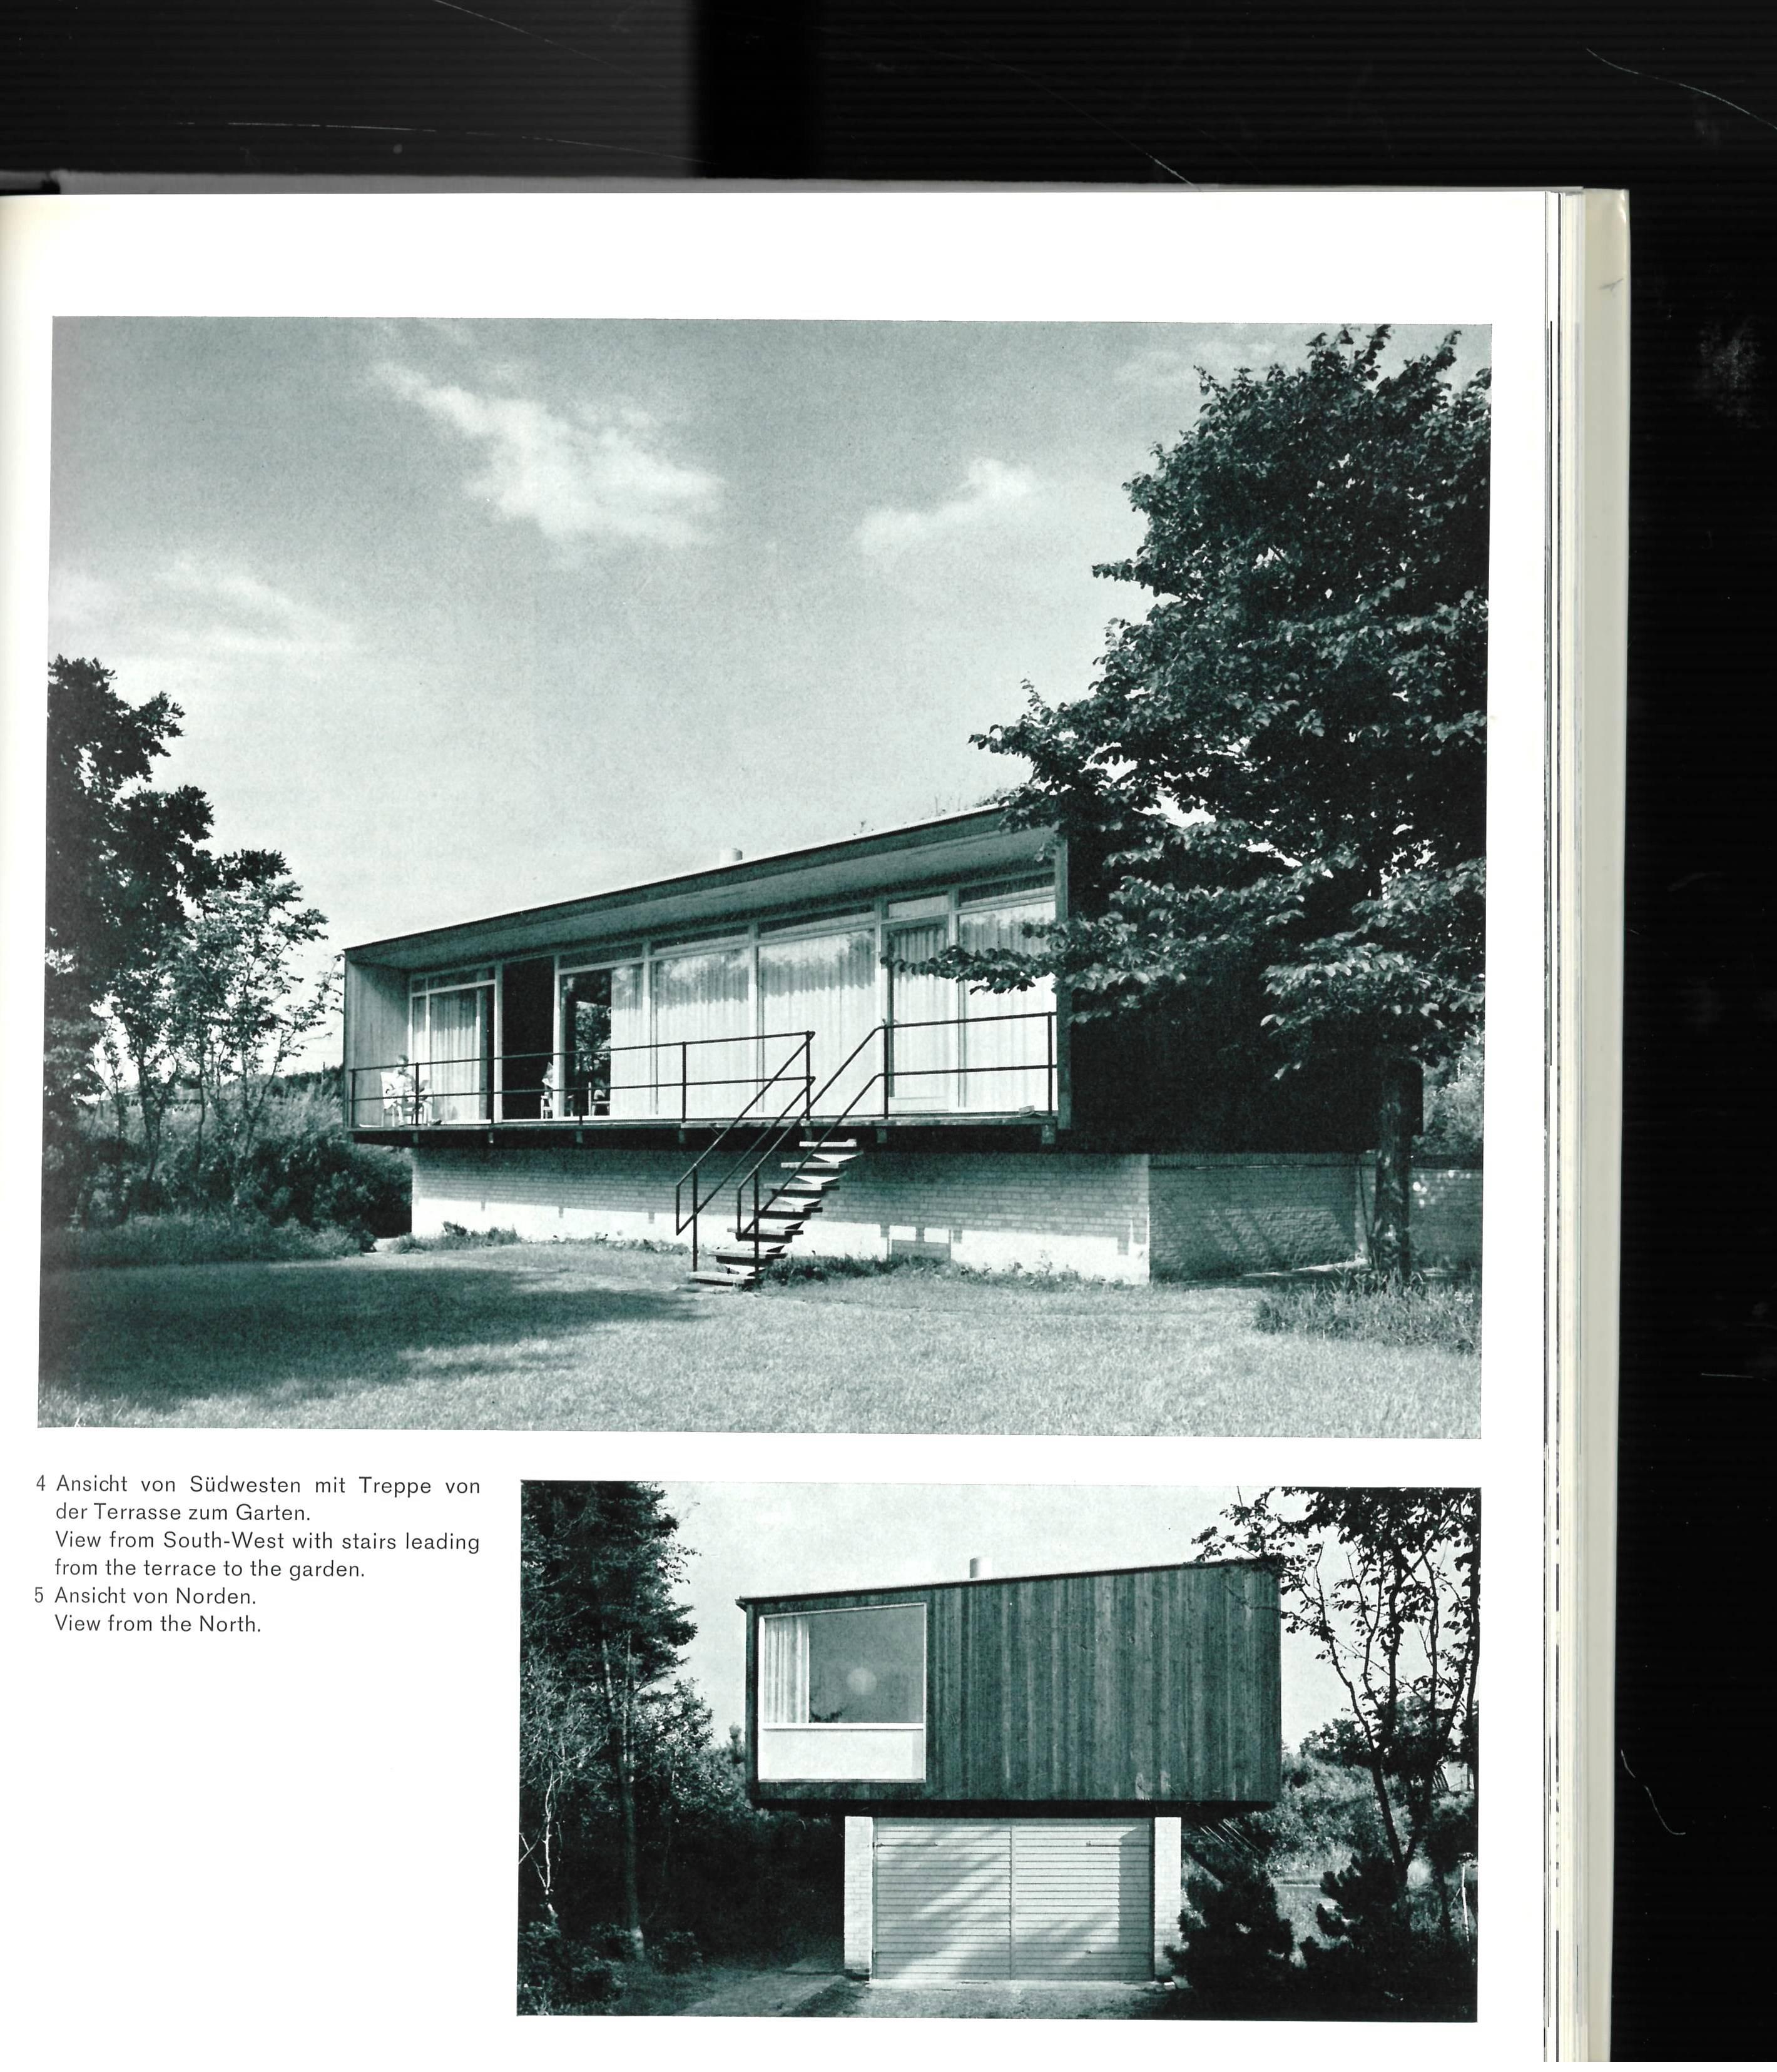 Arne Jacobsen ist heute wahrscheinlich am besten für seine Stuhl- und Möbeldesigns in Erinnerung, aber er war in erster Linie Architekt, und das war auch seine Ausbildung. Dieses Buch befasst sich hauptsächlich mit der architektonischen Seite seiner